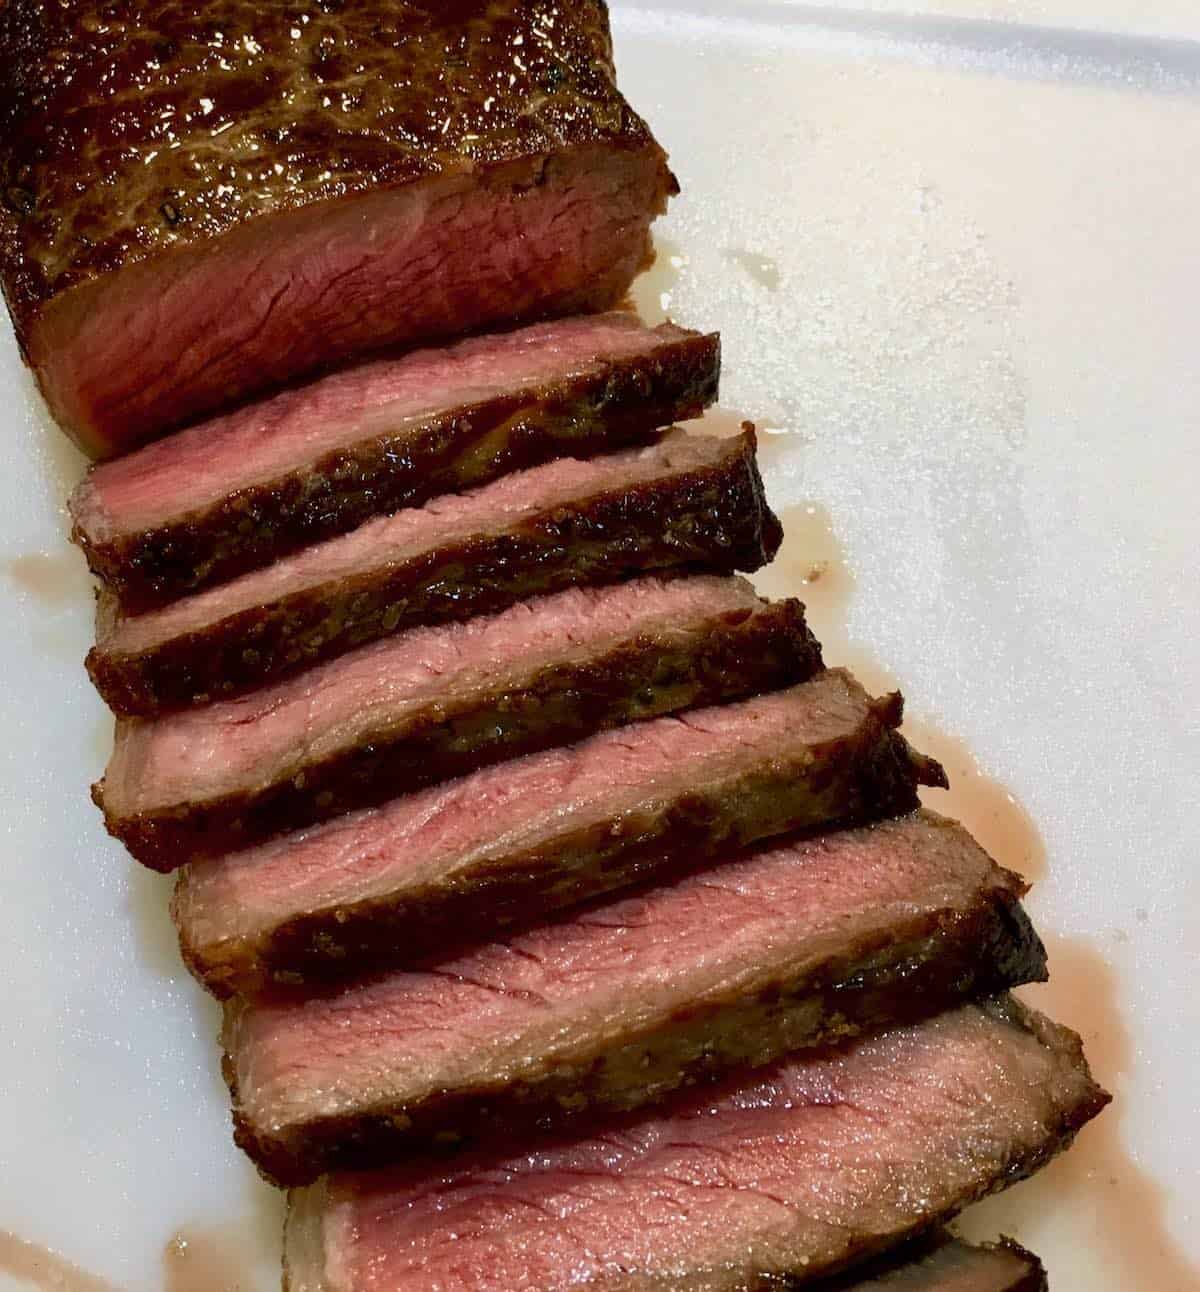 Sliced sous vide steak.